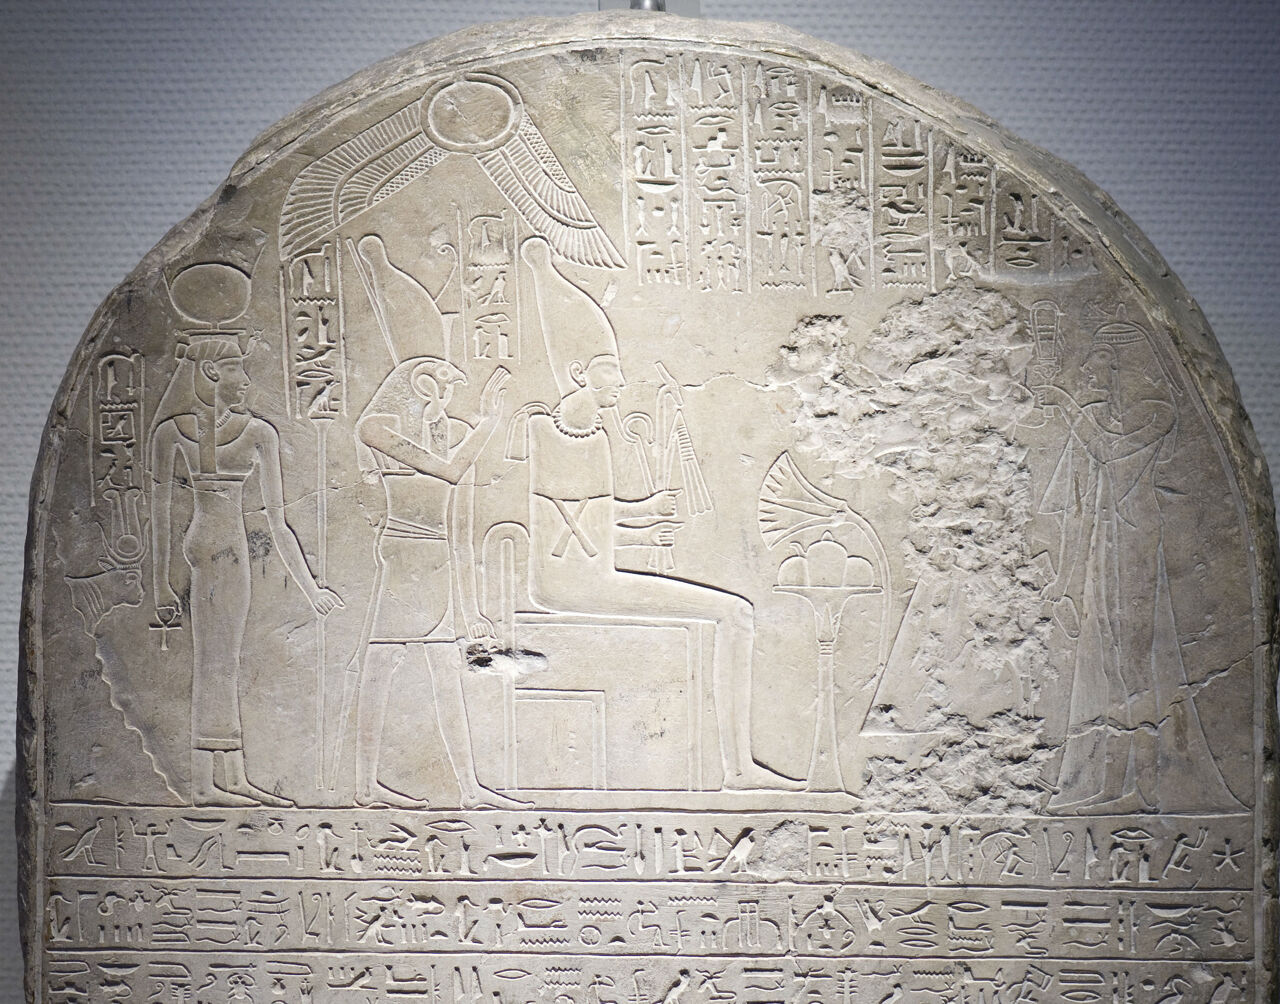 Deel van een stèle van Herihor, een generaal en priester van Amon uit Thebe die zich het koningschap had toegeëigend. De figuur van Herihor die offers brengt aan de goden, is volledig weggehakt. 